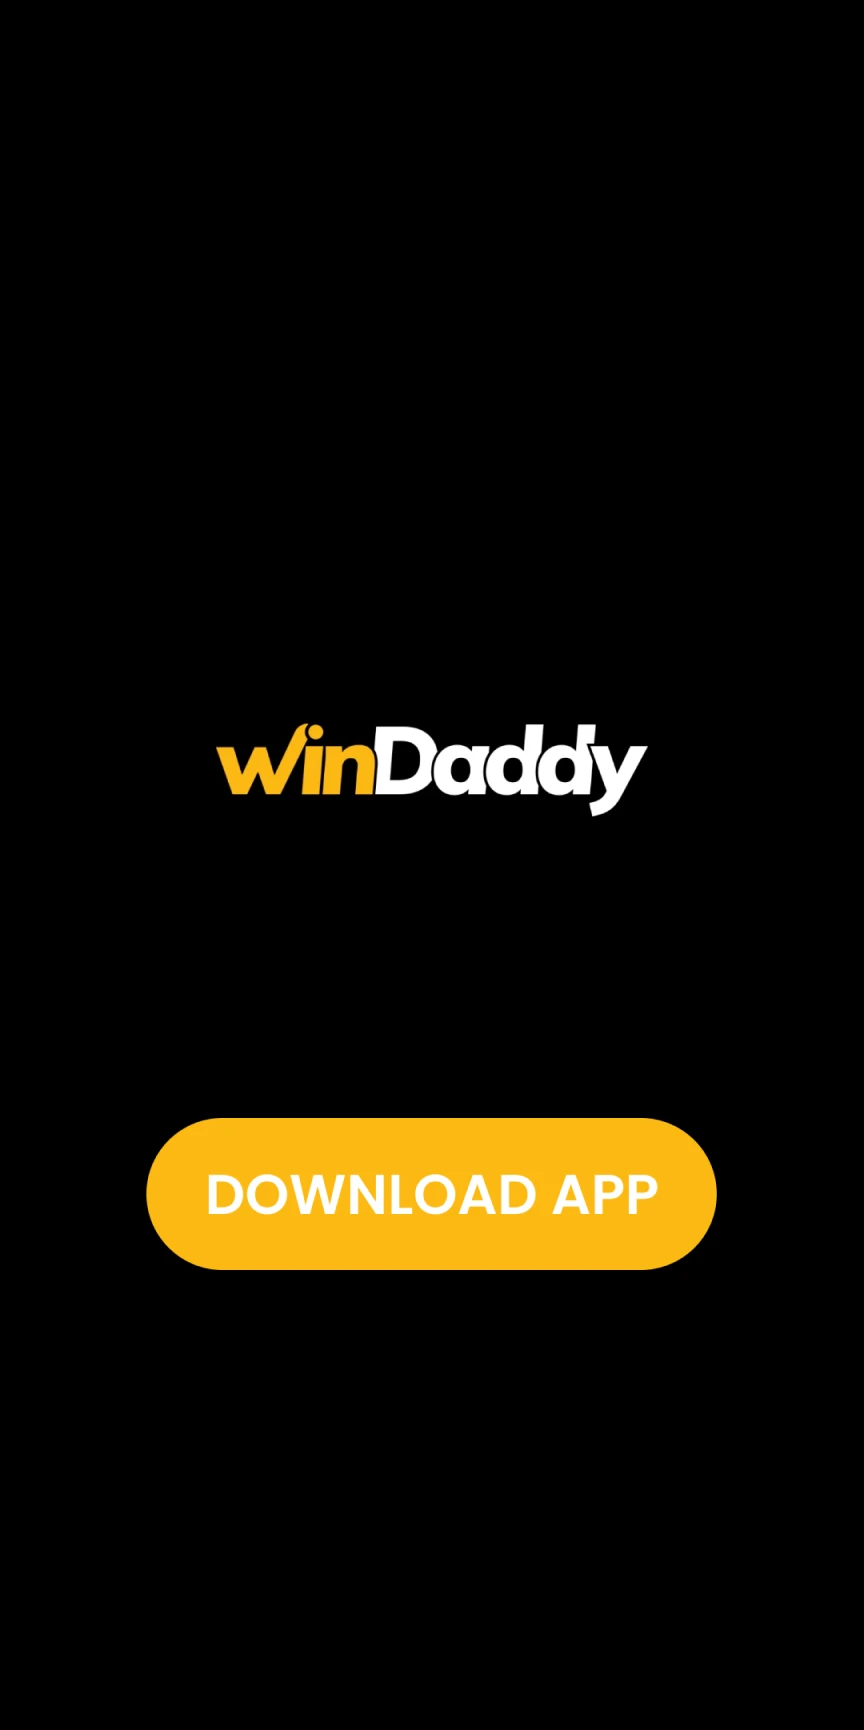 Faça o download do aplicativo WinDaddy para iOS.